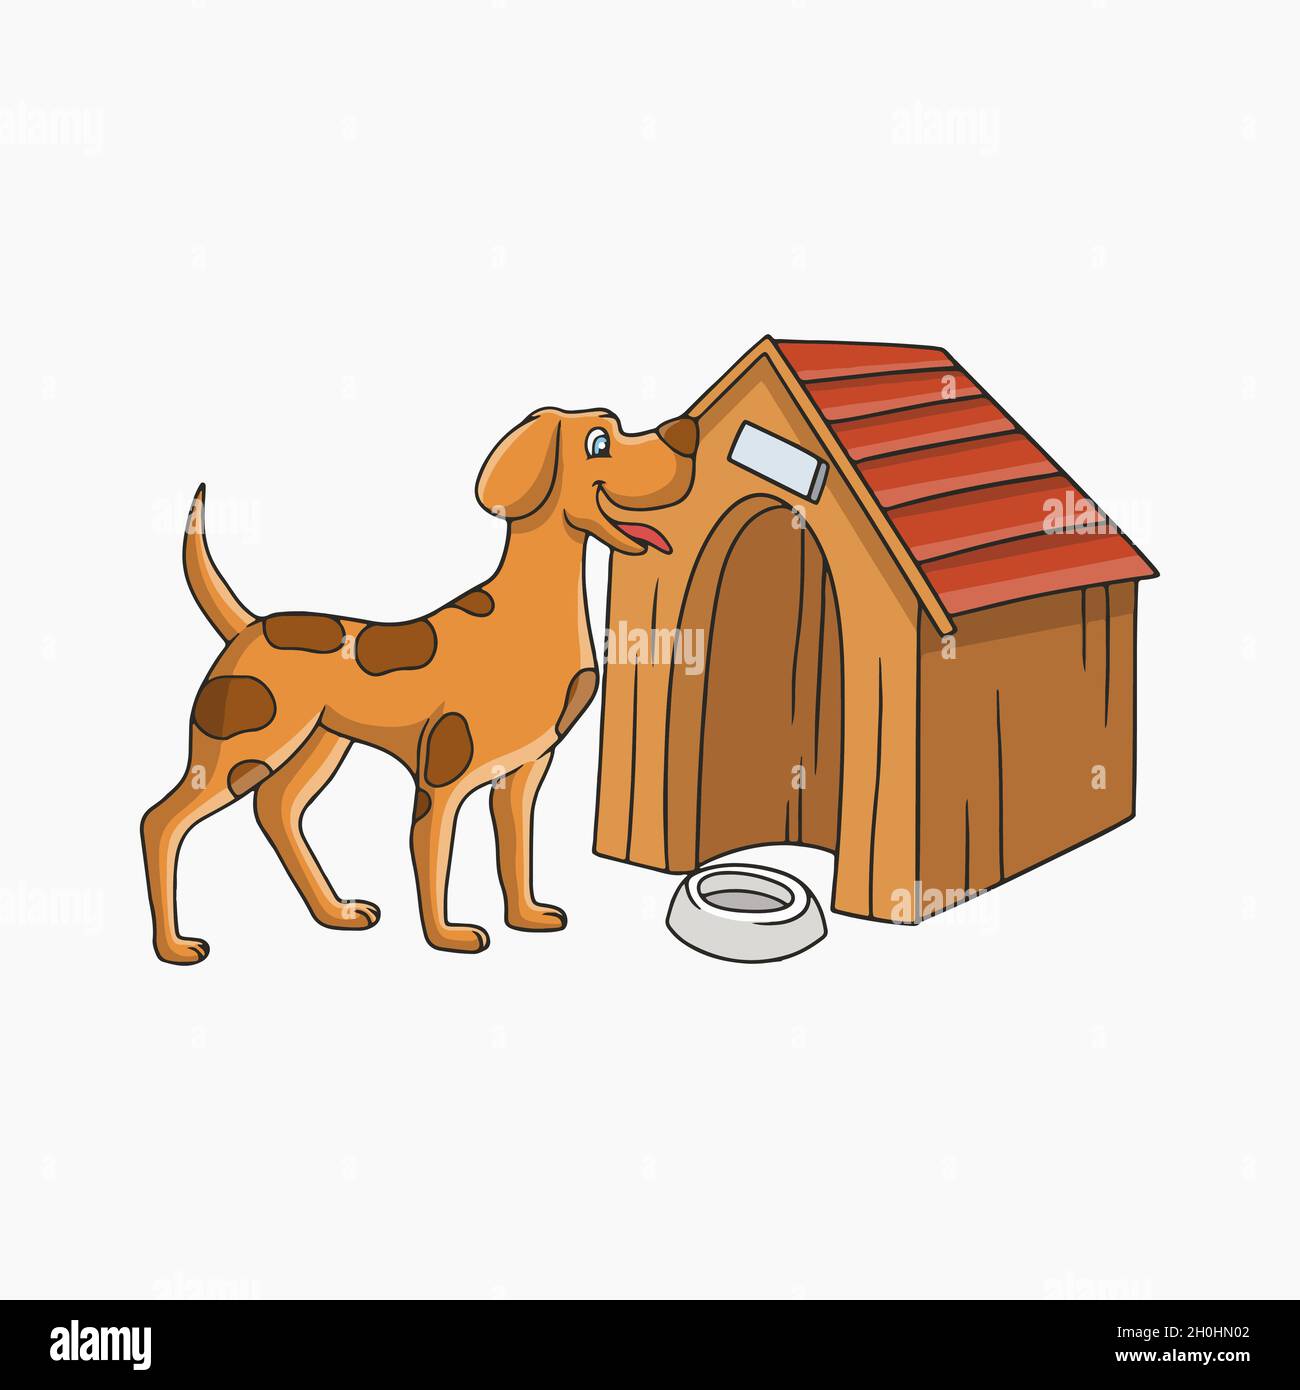 cartoon dog houses clipart urban